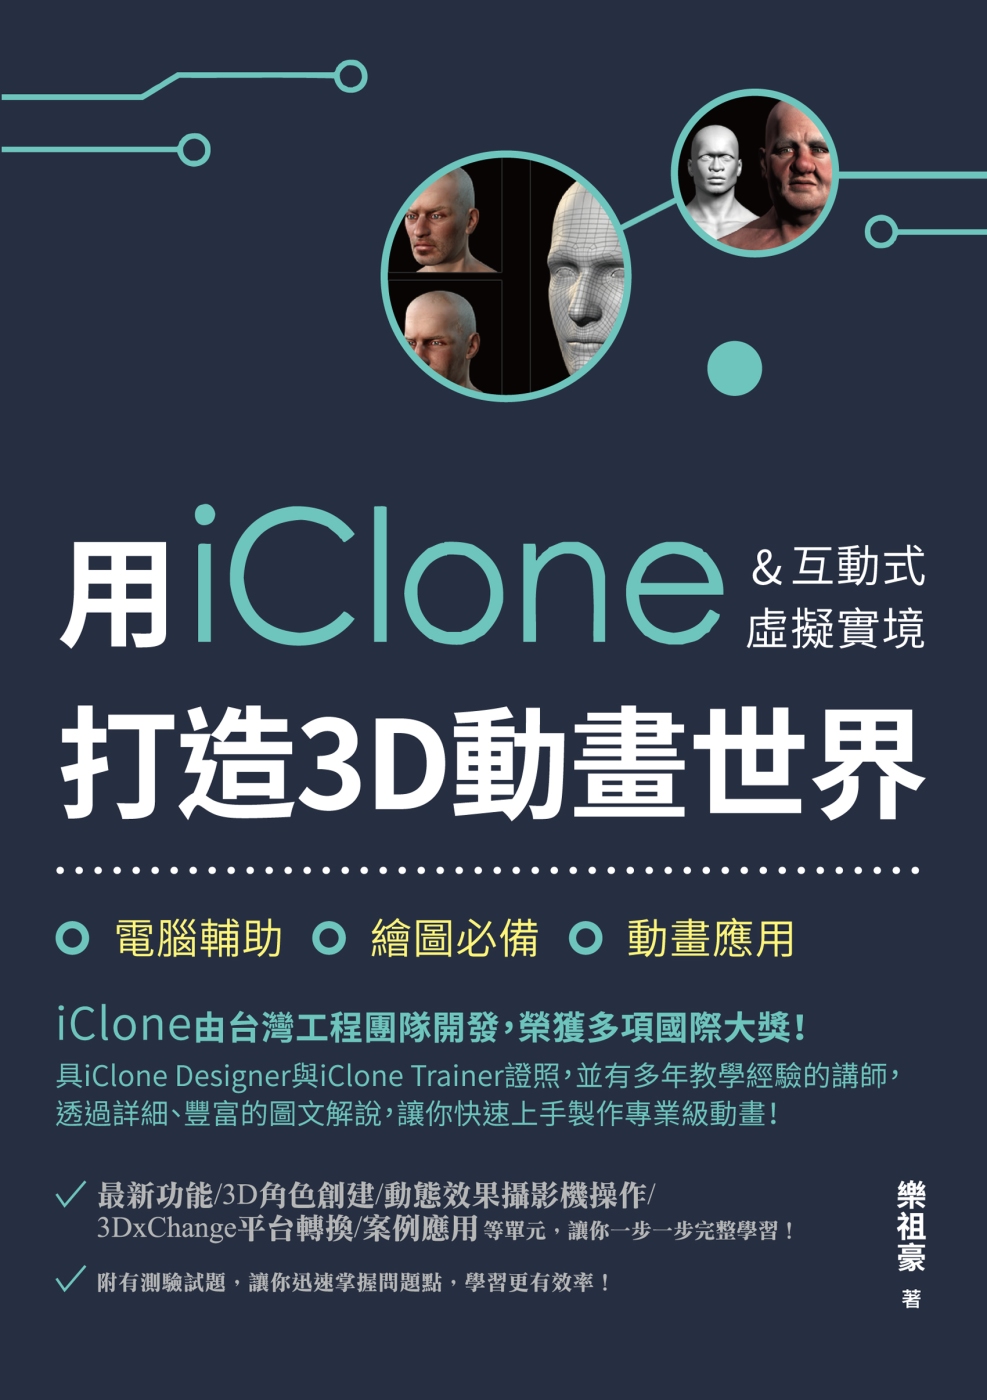 用iClone&互動式虛擬實境打...